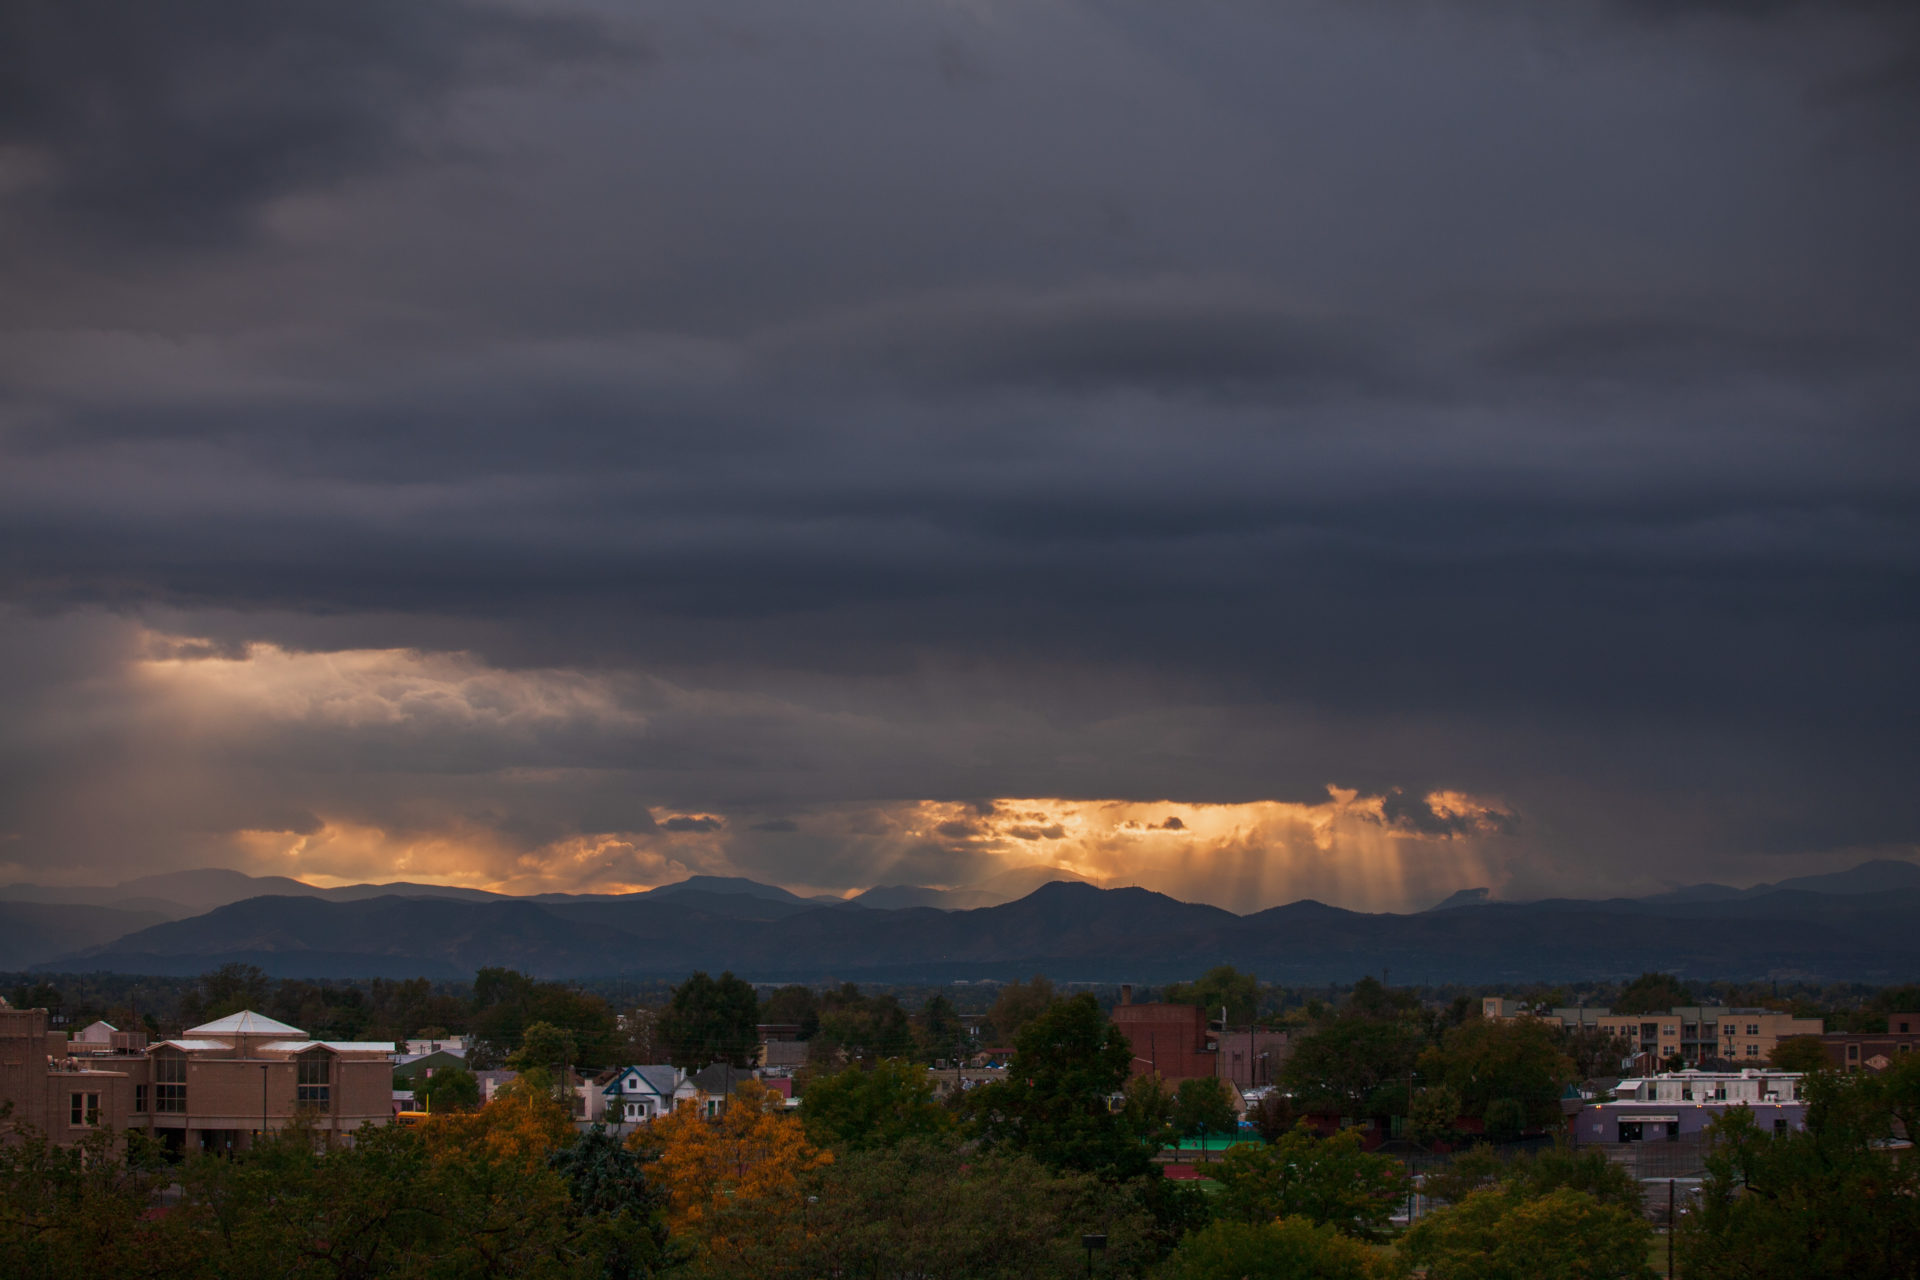 Mount Evans sunset - October 10, 2010